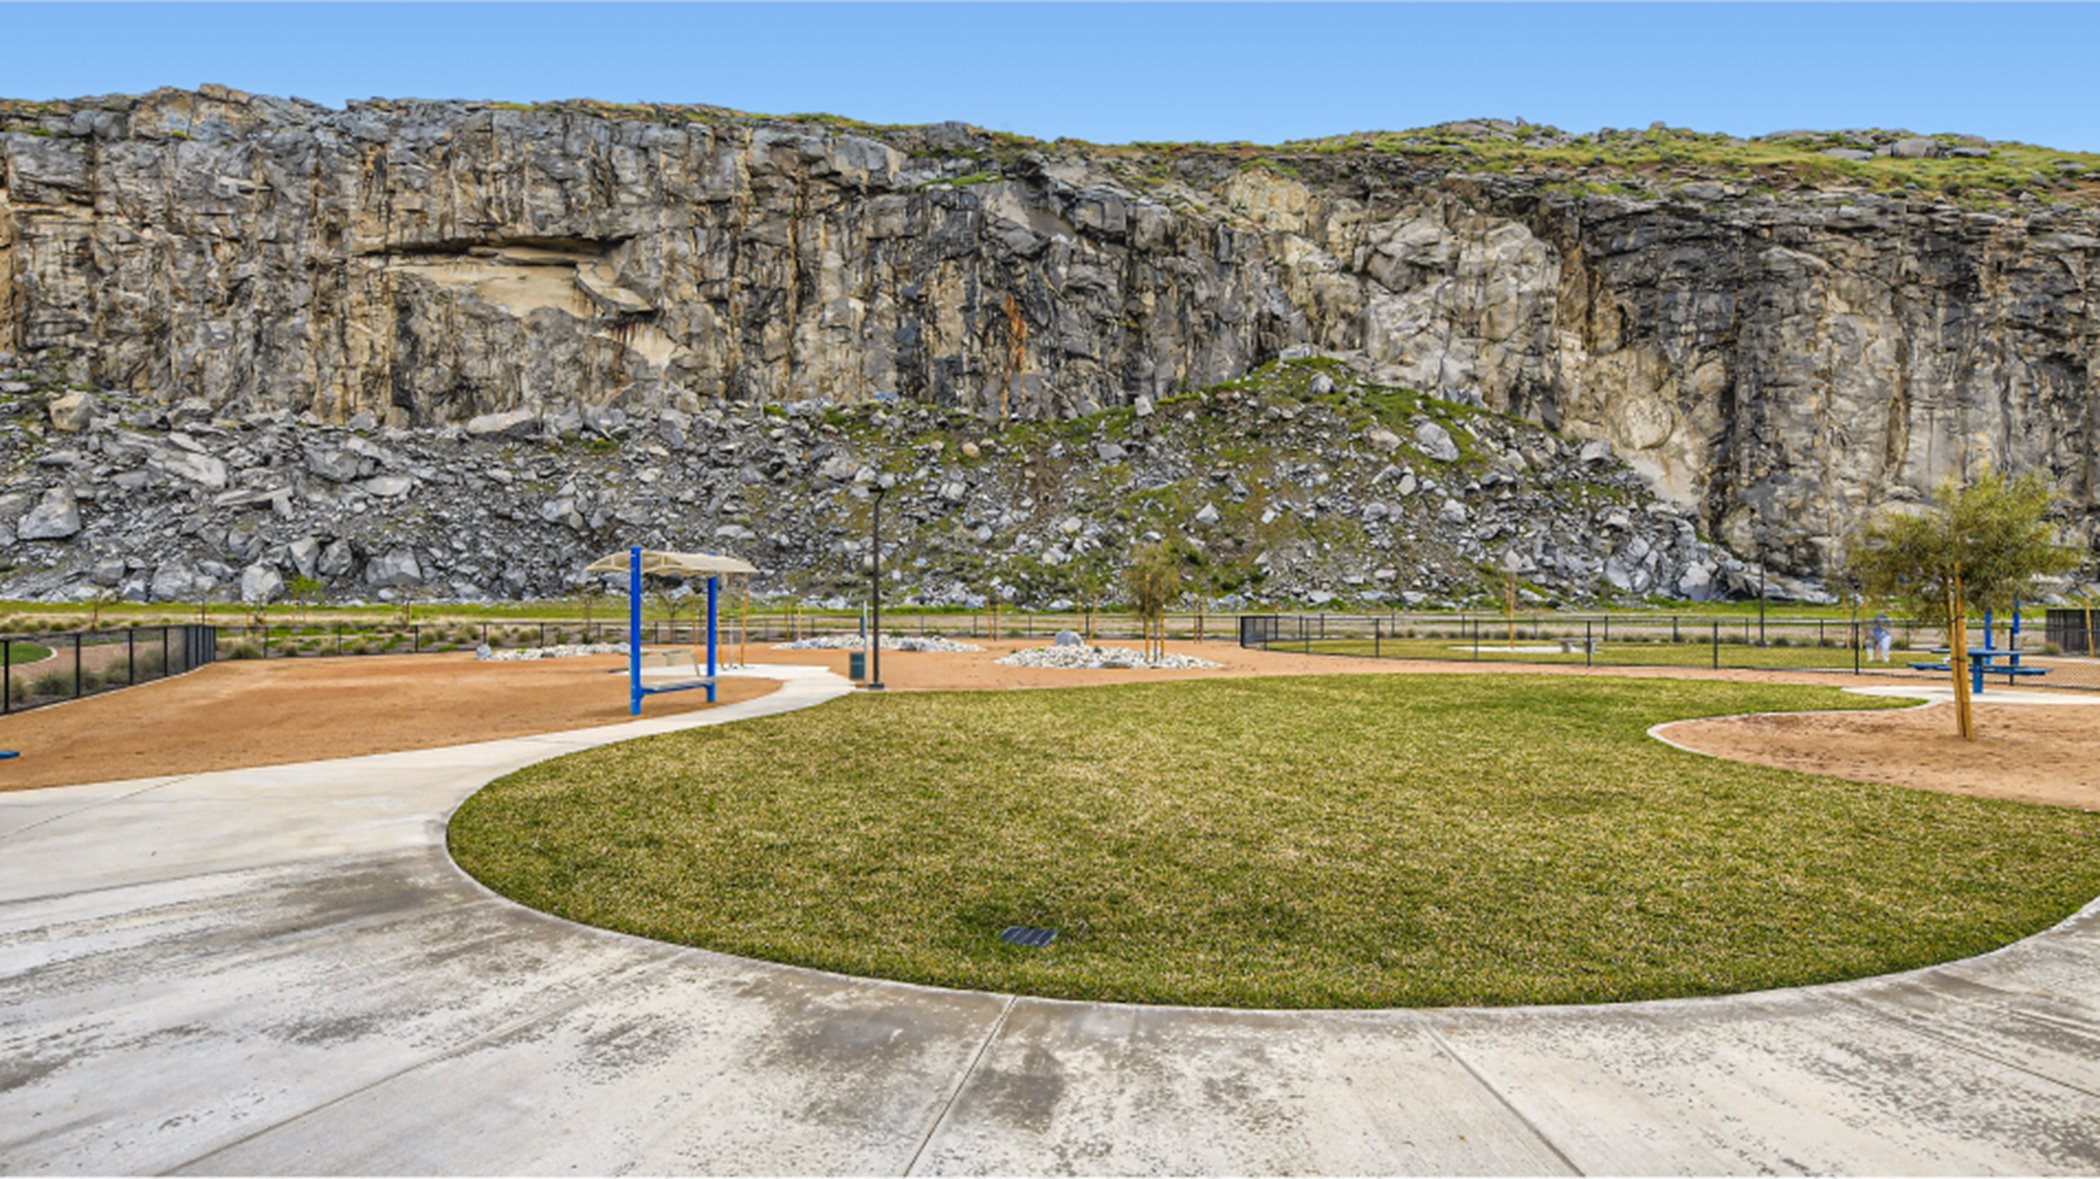 Shadow Rock dog park amenity